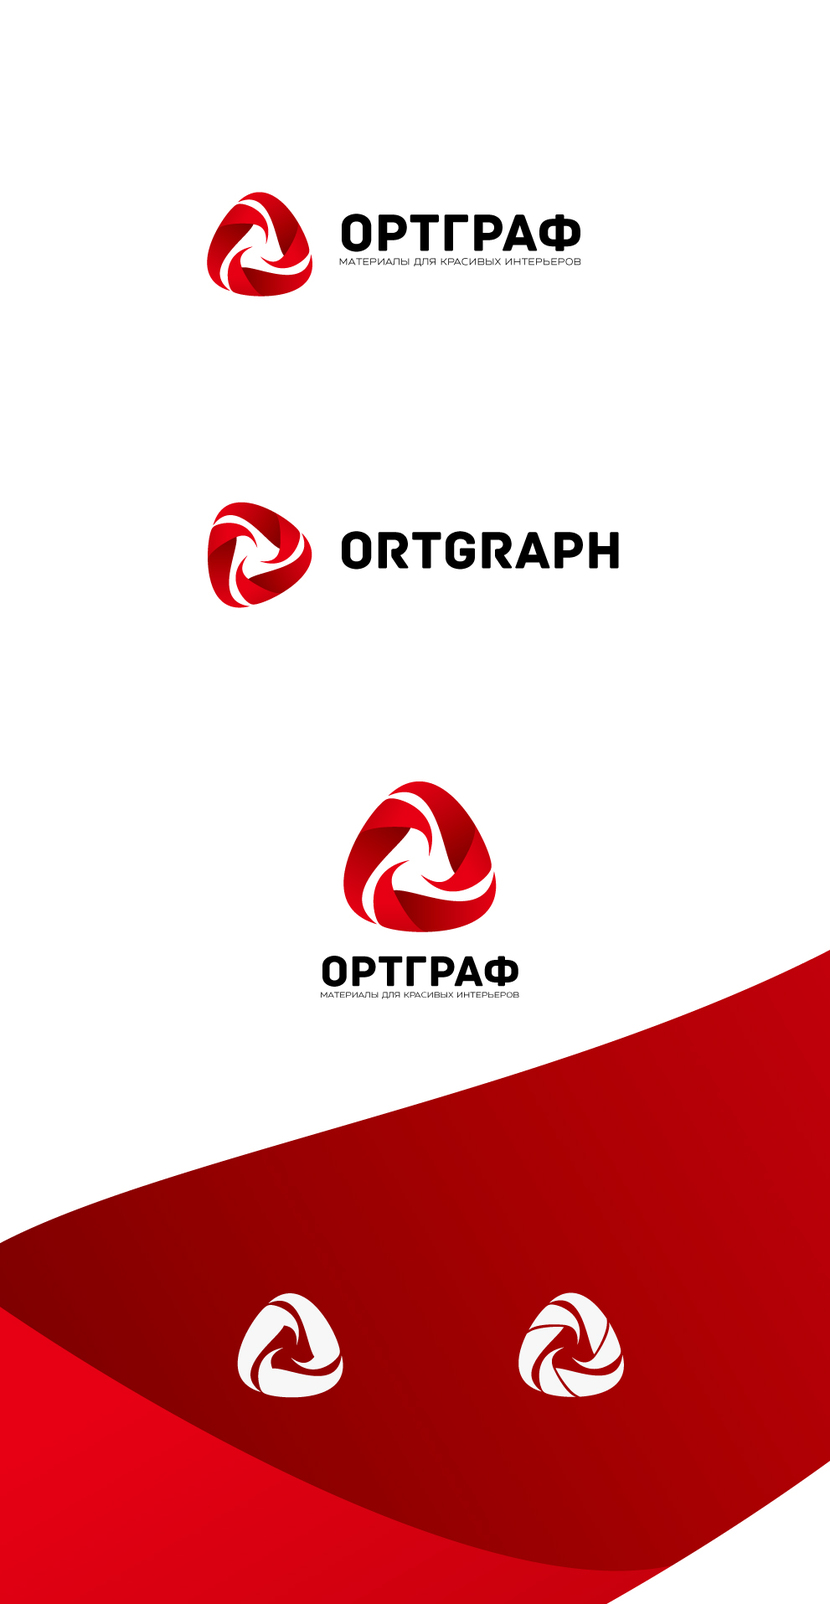 Разработка логотипа и фирменного стиля для компания ОРТГРАФ  -  автор Роман Listy